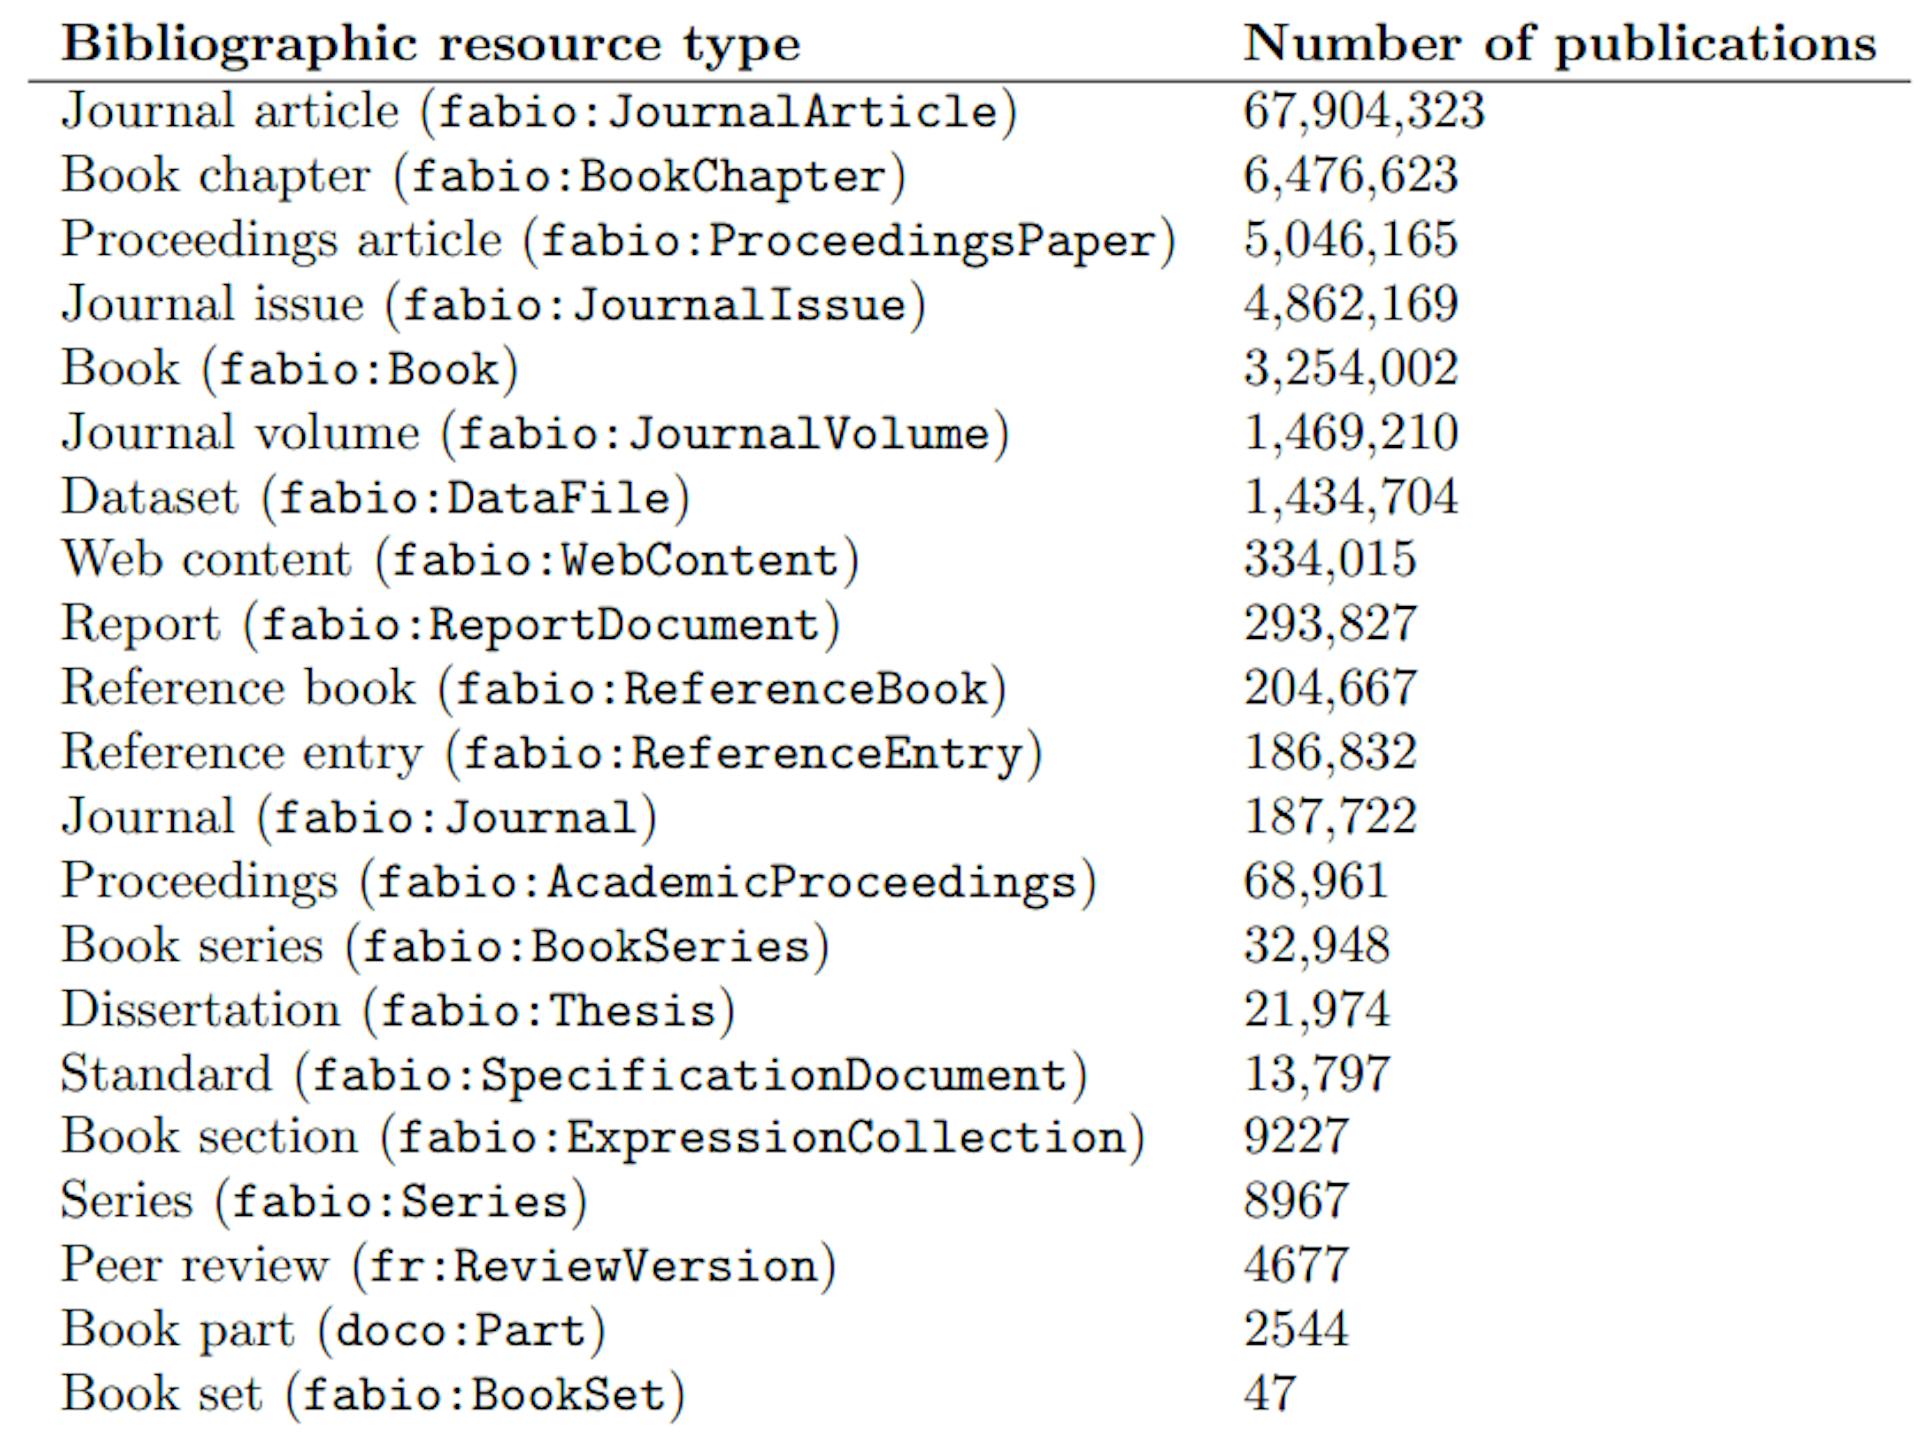 Tabela 5: Todos os tipos de recursos bibliográficos envolvidos no OpenCitations Meta, ordenados pelo número de publicações desse tipo. As ontologias de referência são FaBiO (http://purl.org/spar/fabio), DOCO (http://purl.org/spar/doco) e revisões FAIR (http://purl.org/spar/fr)